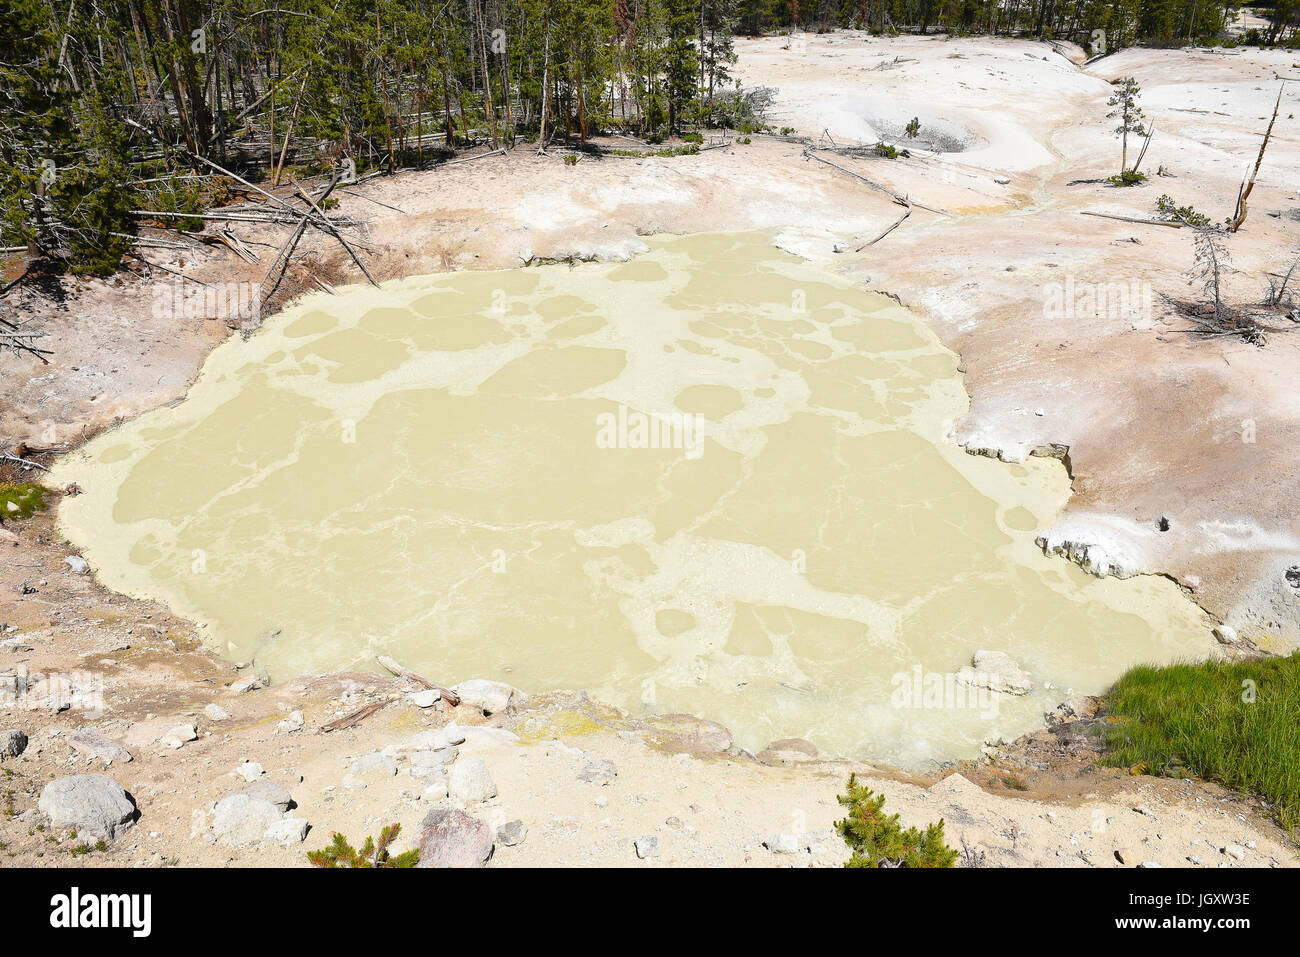 Caldero de azufre, el Parque Nacional de Yellowstone, está al borde de una de las zonas más activas de los parques enterrado volcán, llenar el caldero con sulfu Foto de stock